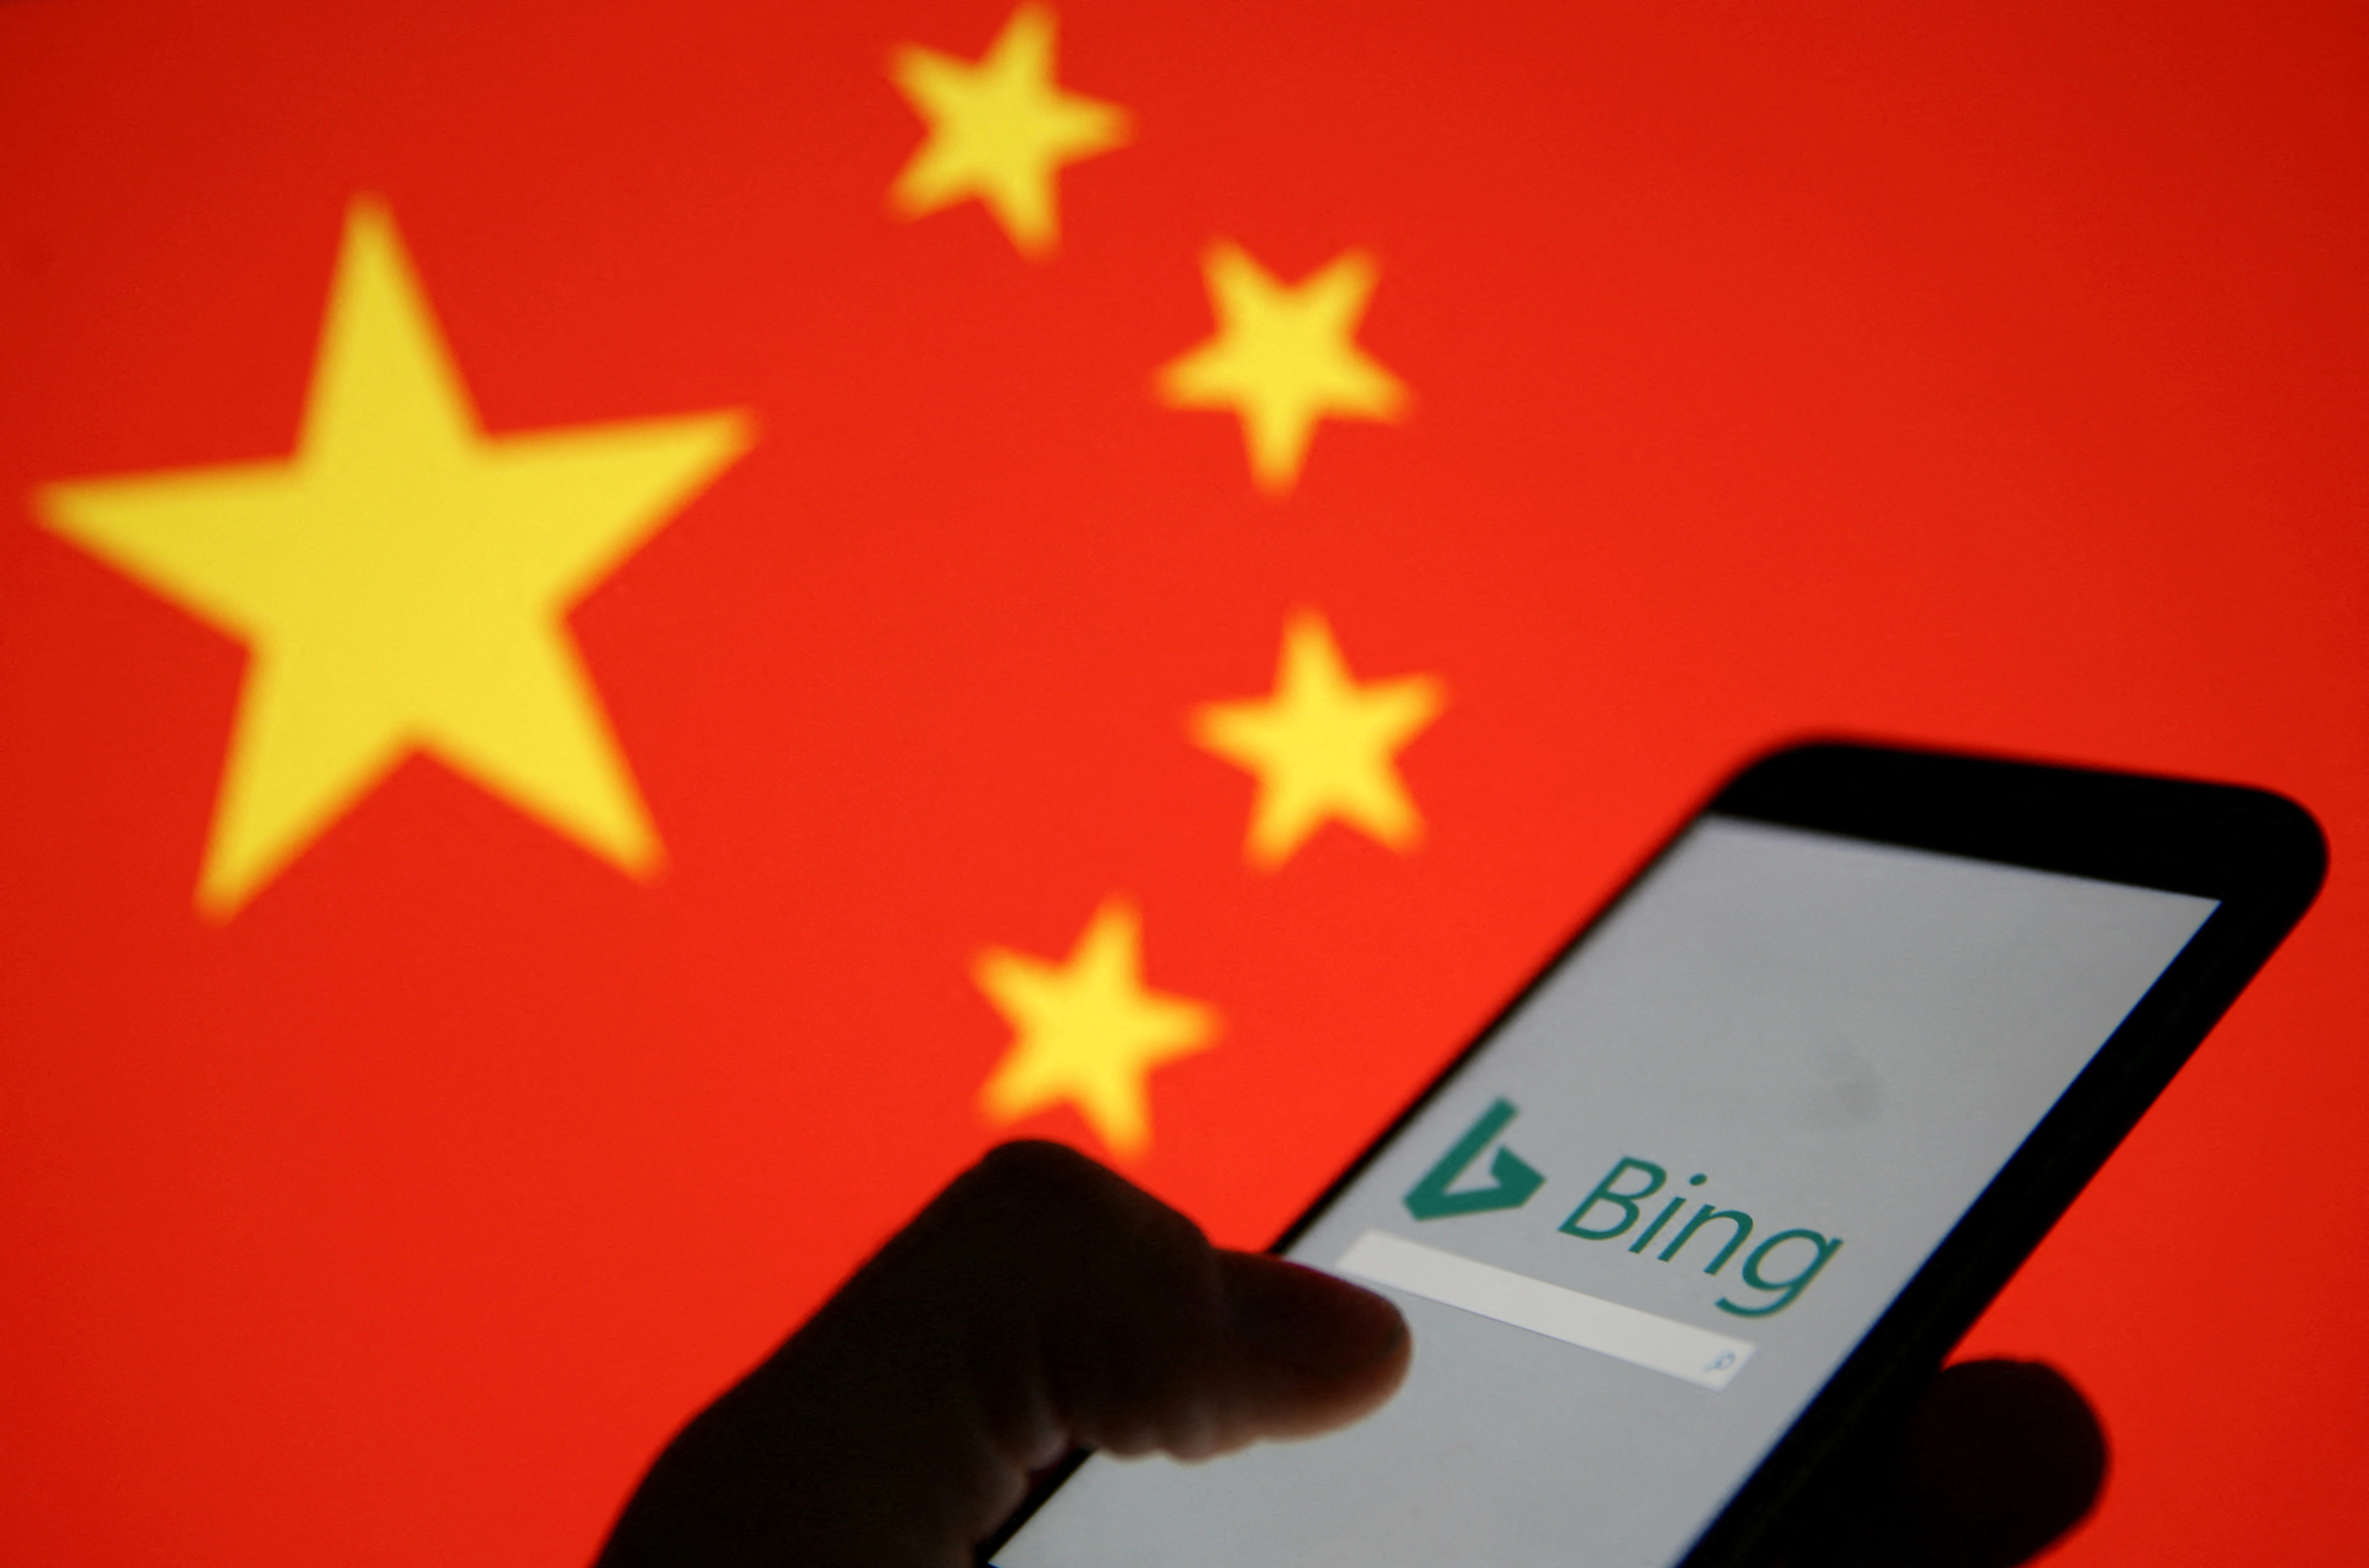 Bing ultrapassa Baidu e se torna o maior buscador na China